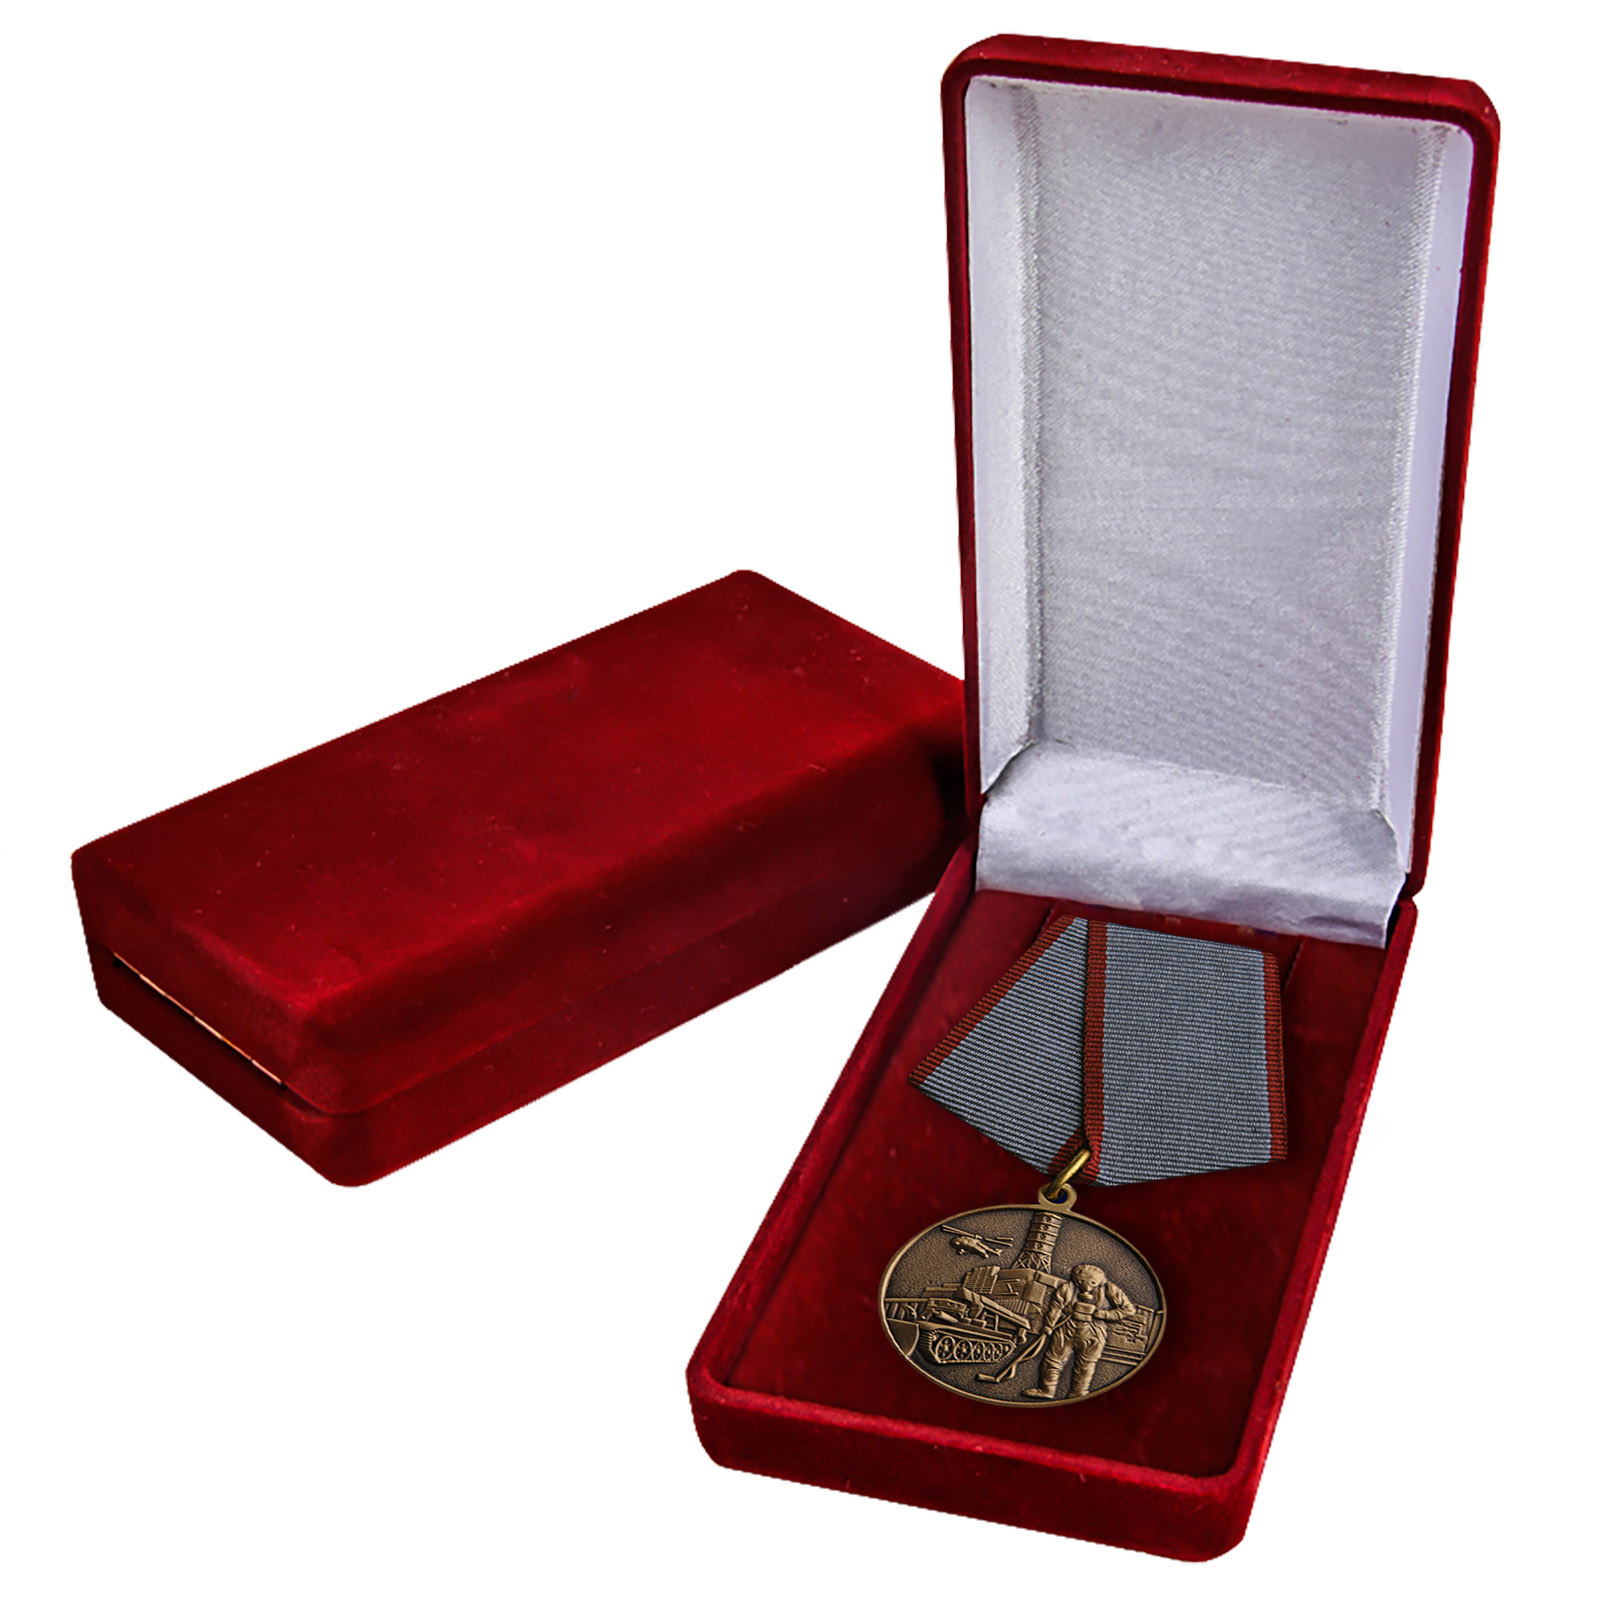 Общественная медаль "Ликвидатору ядерных катастроф" 